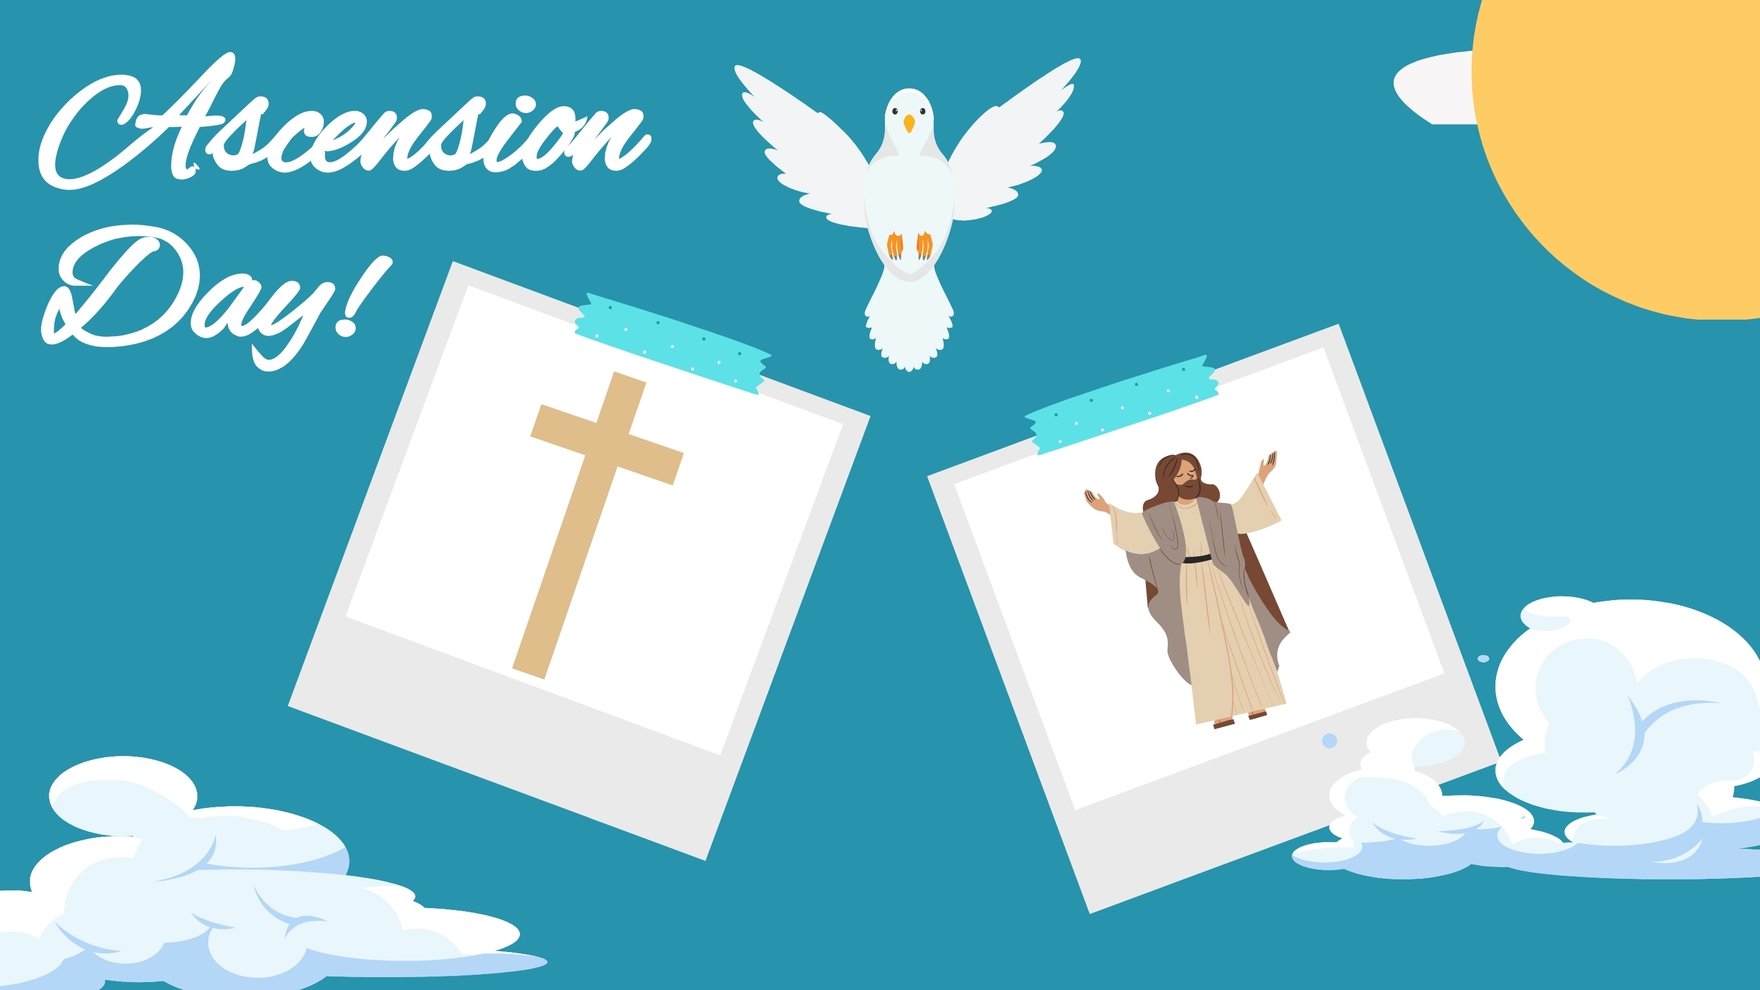 Free Ascension Day Image Background in PDF, Illustrator, PSD, EPS, SVG, JPG, PNG